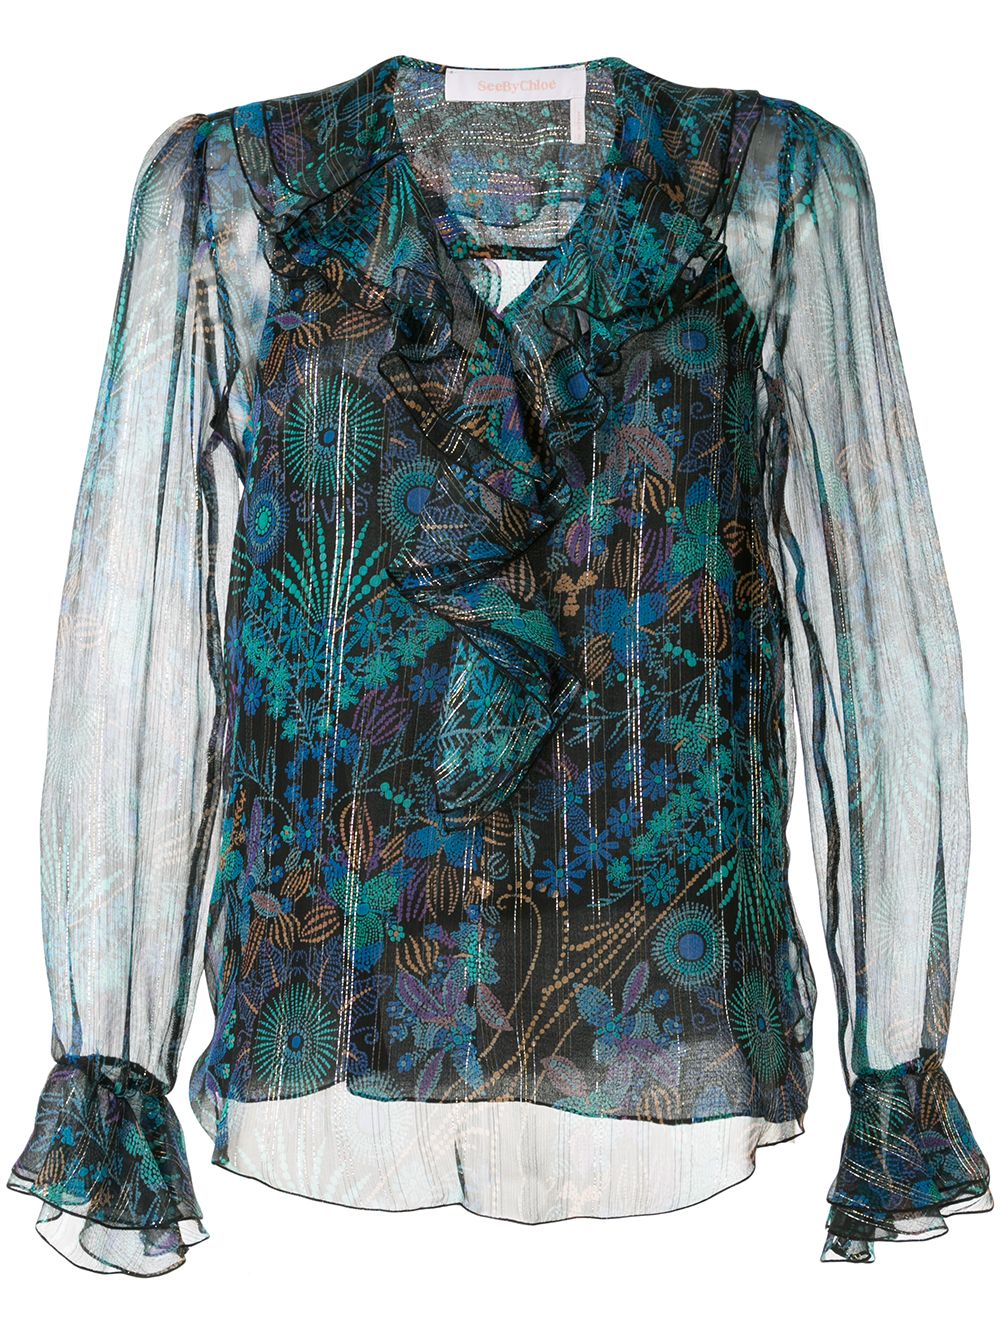 фото See by chloé блузка с оборками и принтом